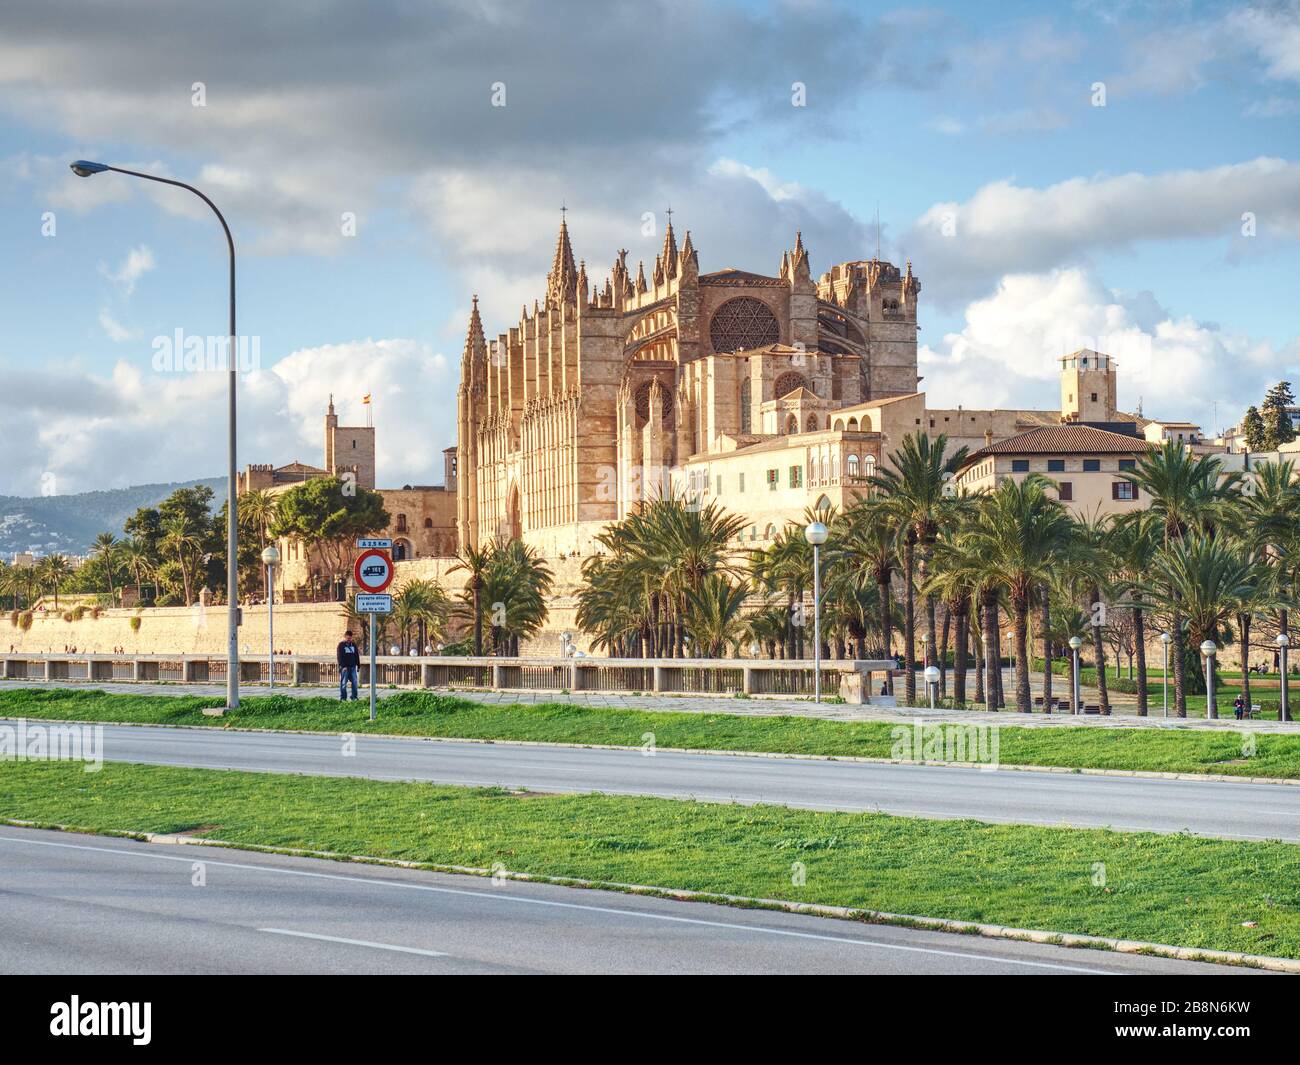 La Seu, la cattedrale gotica medievale di Palma di Maiorca, Spagna. 26 gennaio 2020 Foto Stock